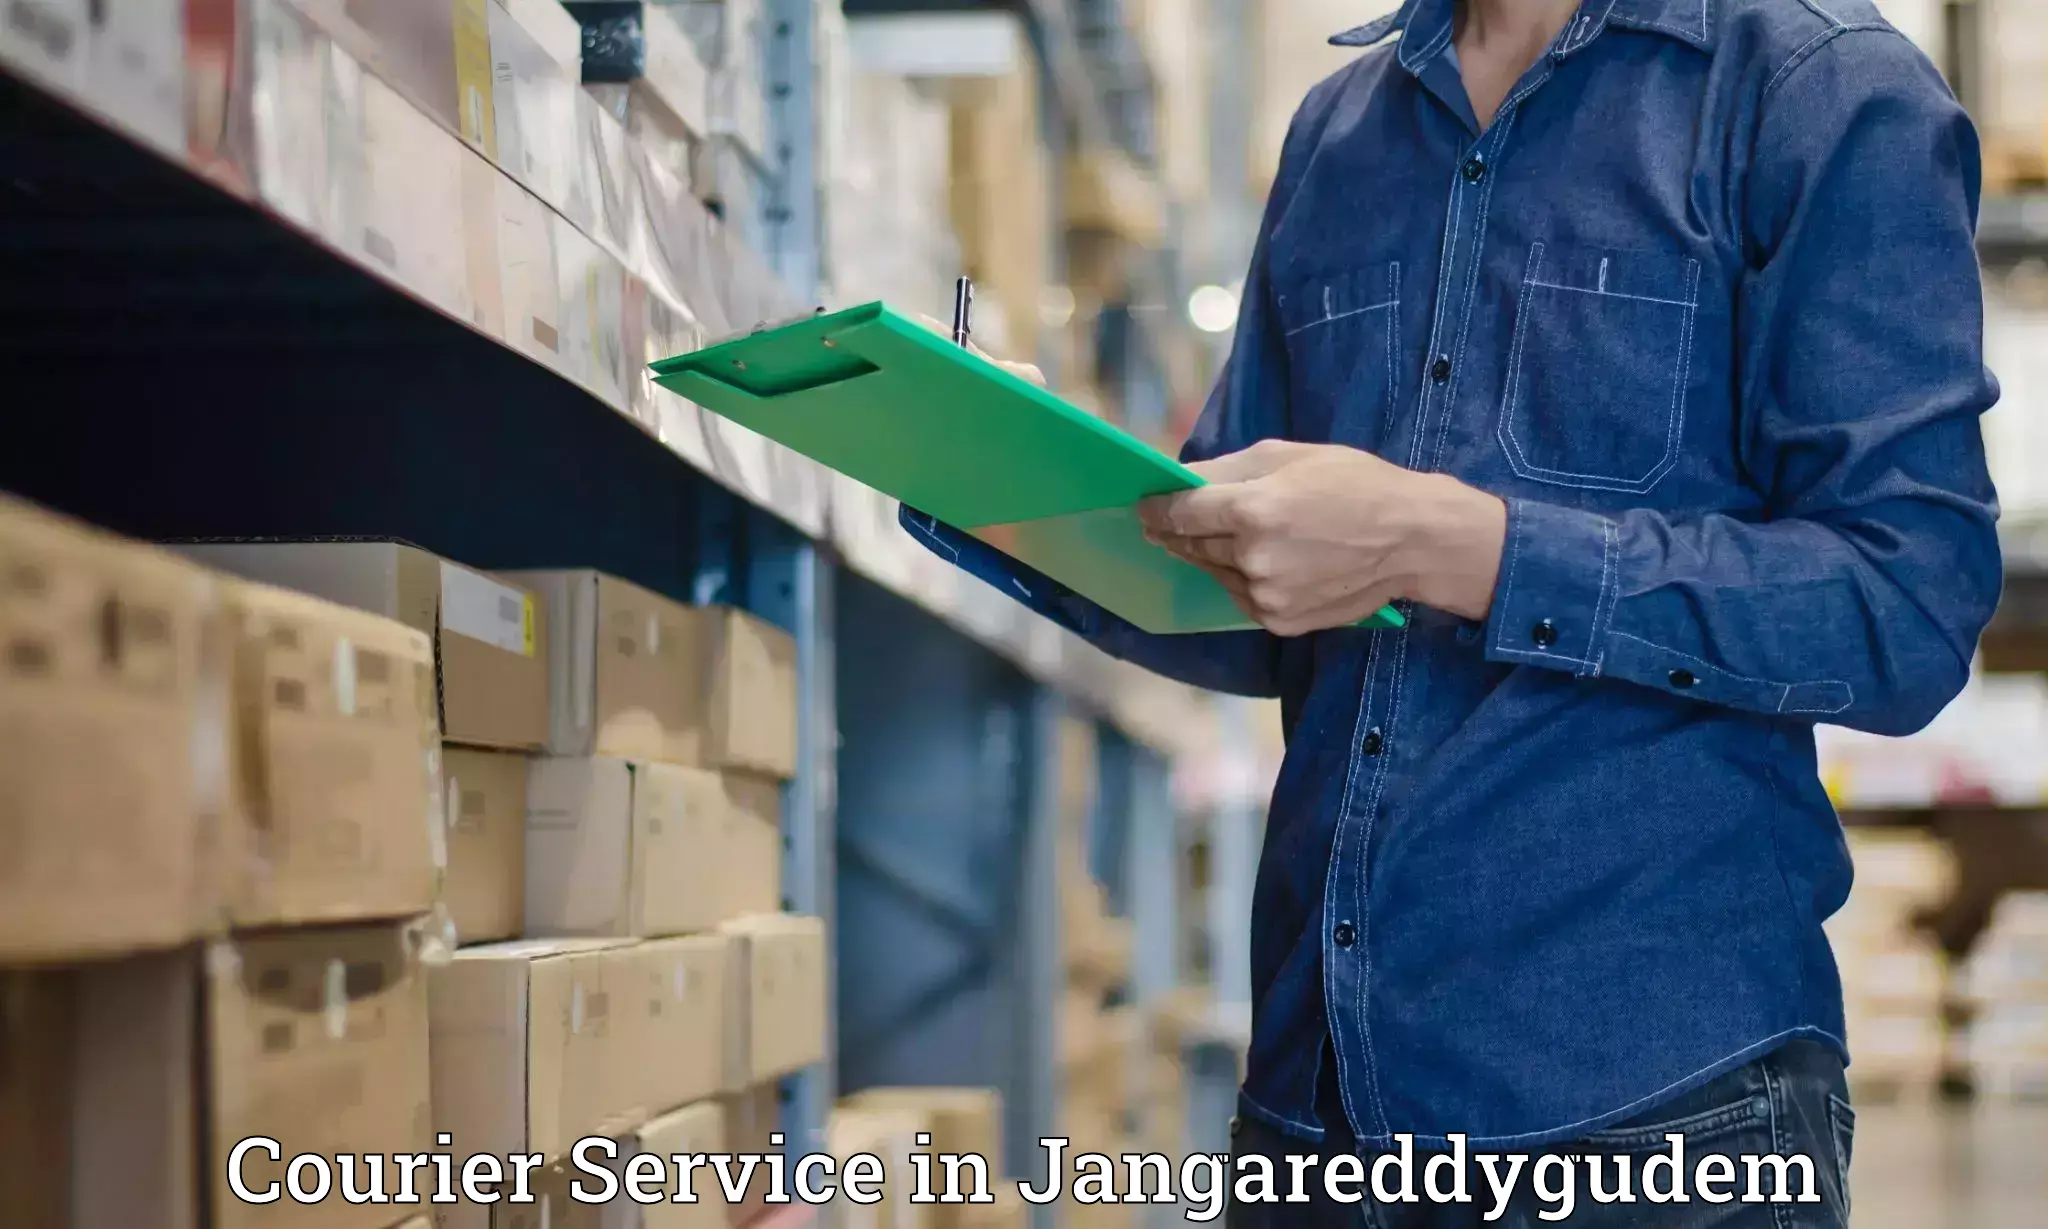 High value parcel delivery in Jangareddygudem